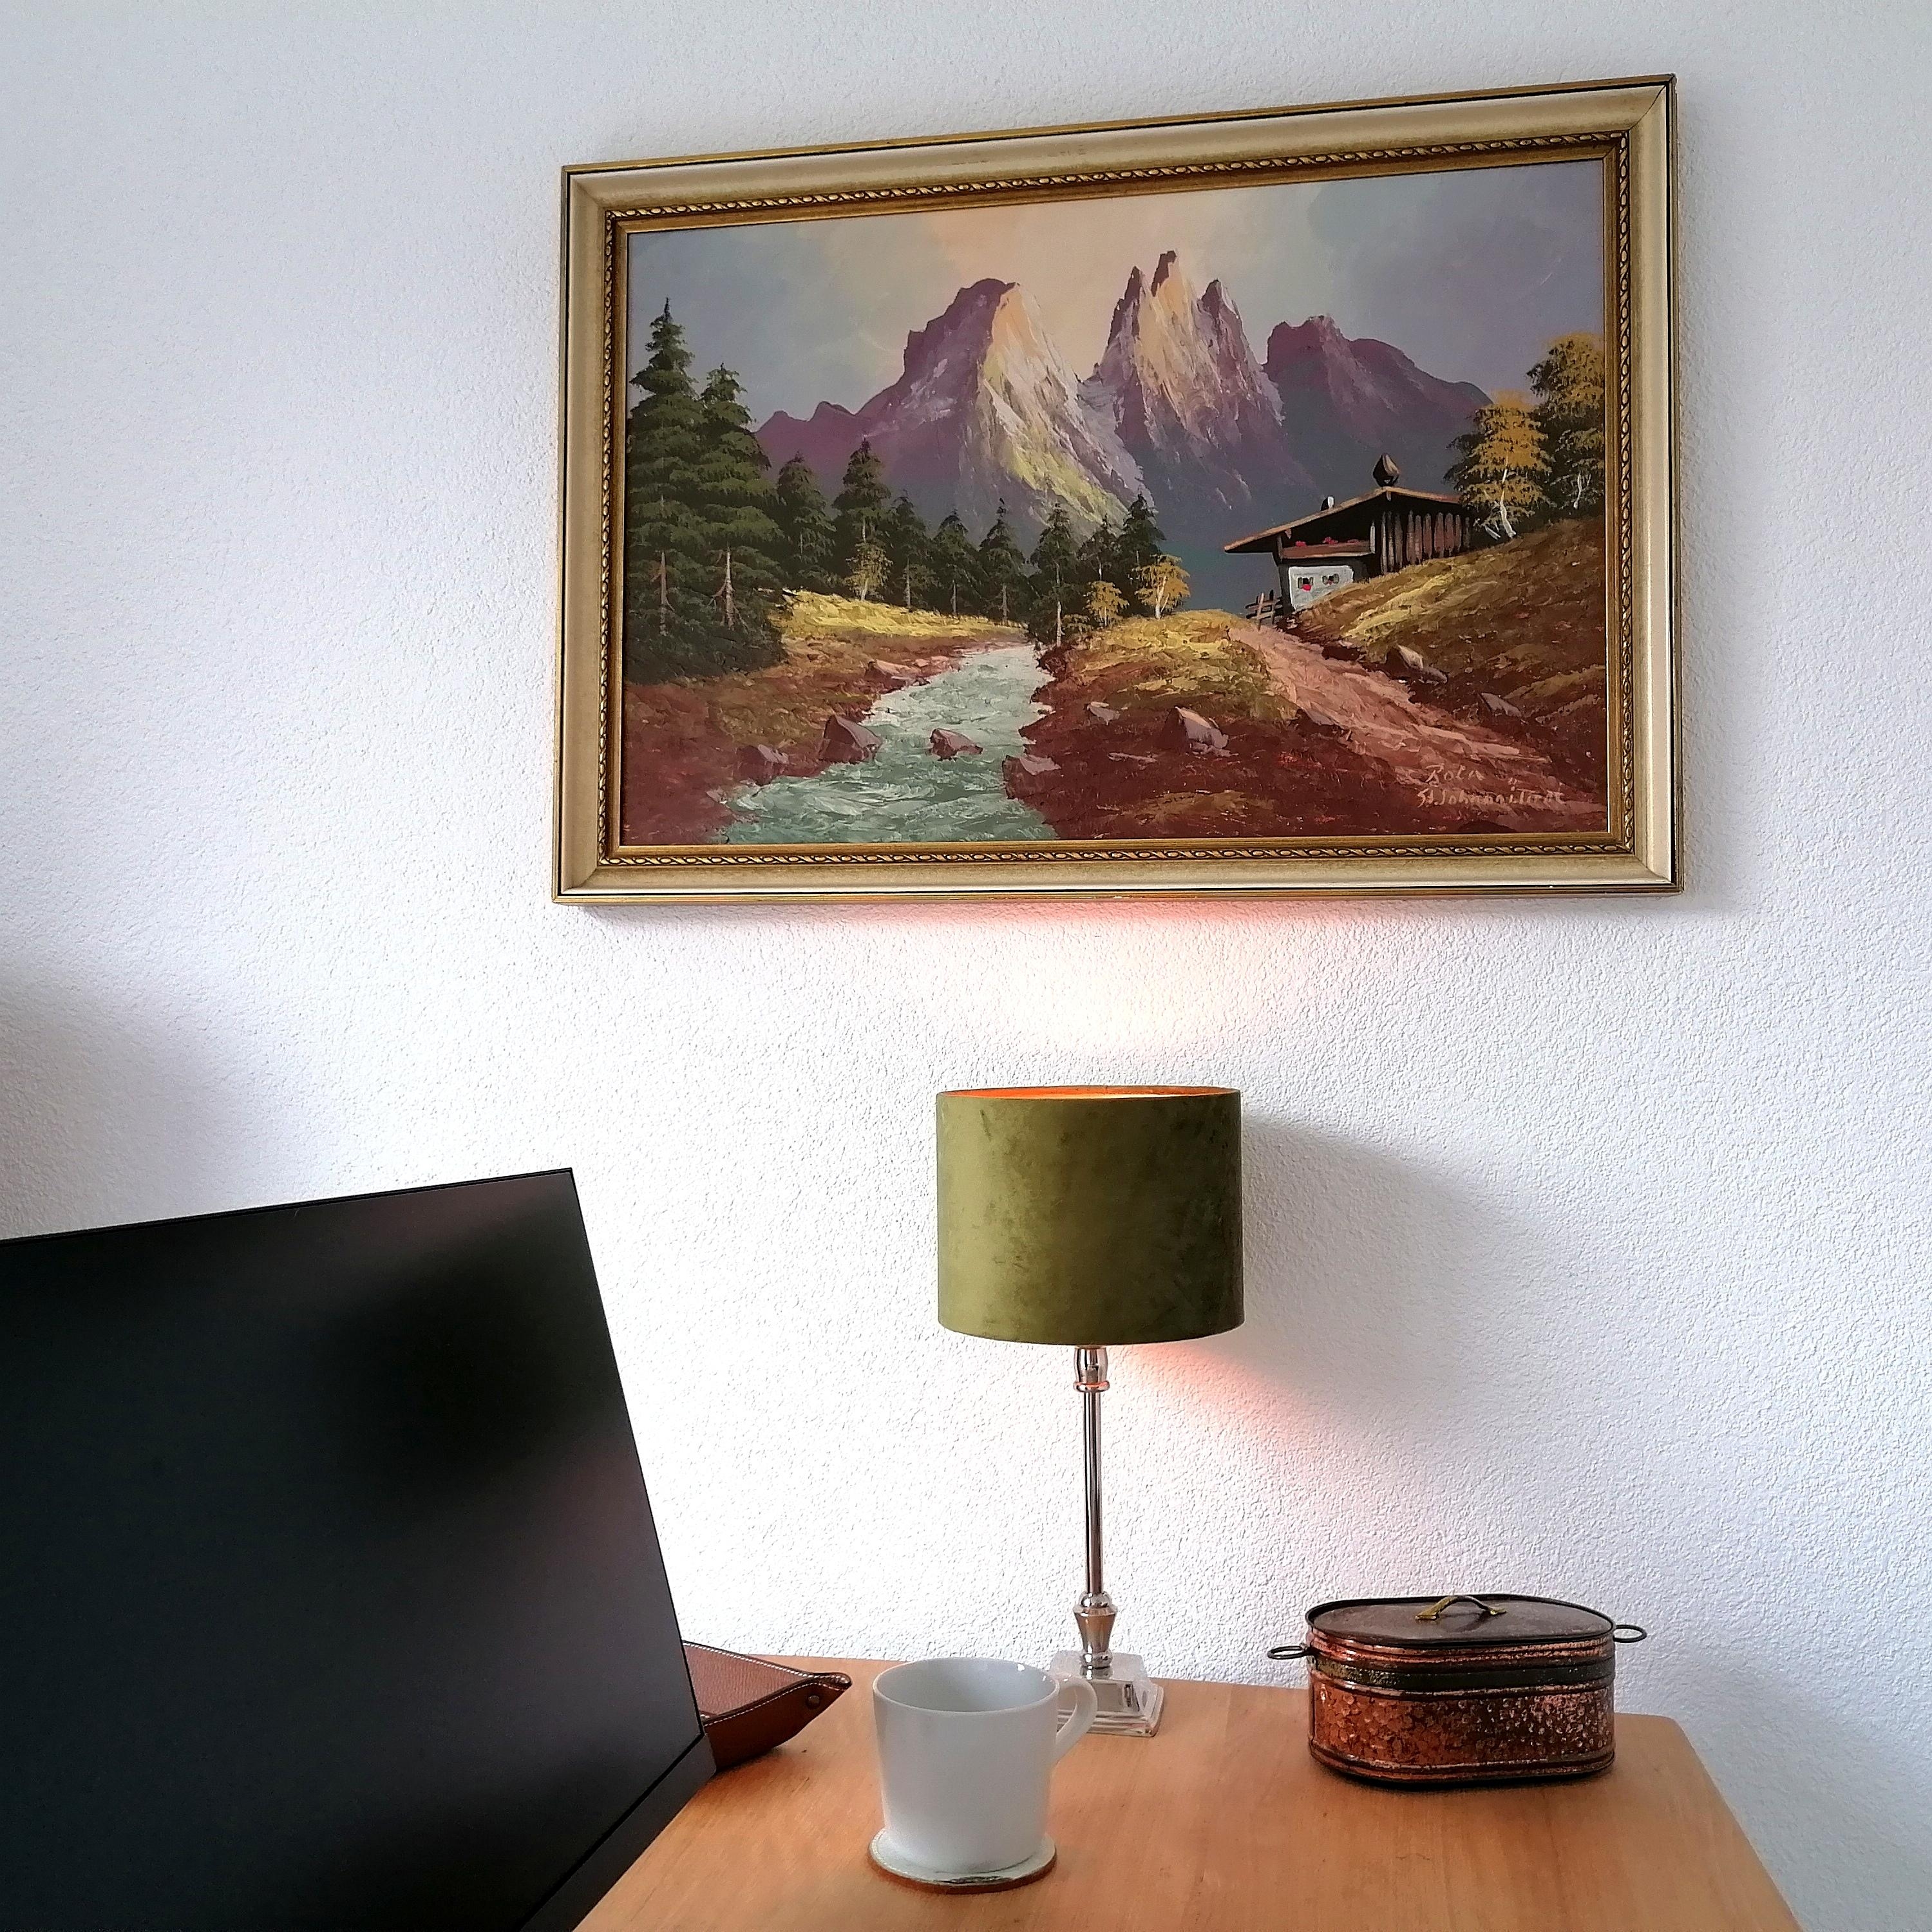 Gemälde St. Johann in Tirol passt perfekt zur unserer Büroeinrichtung 🖼️ #art #homeoffice 